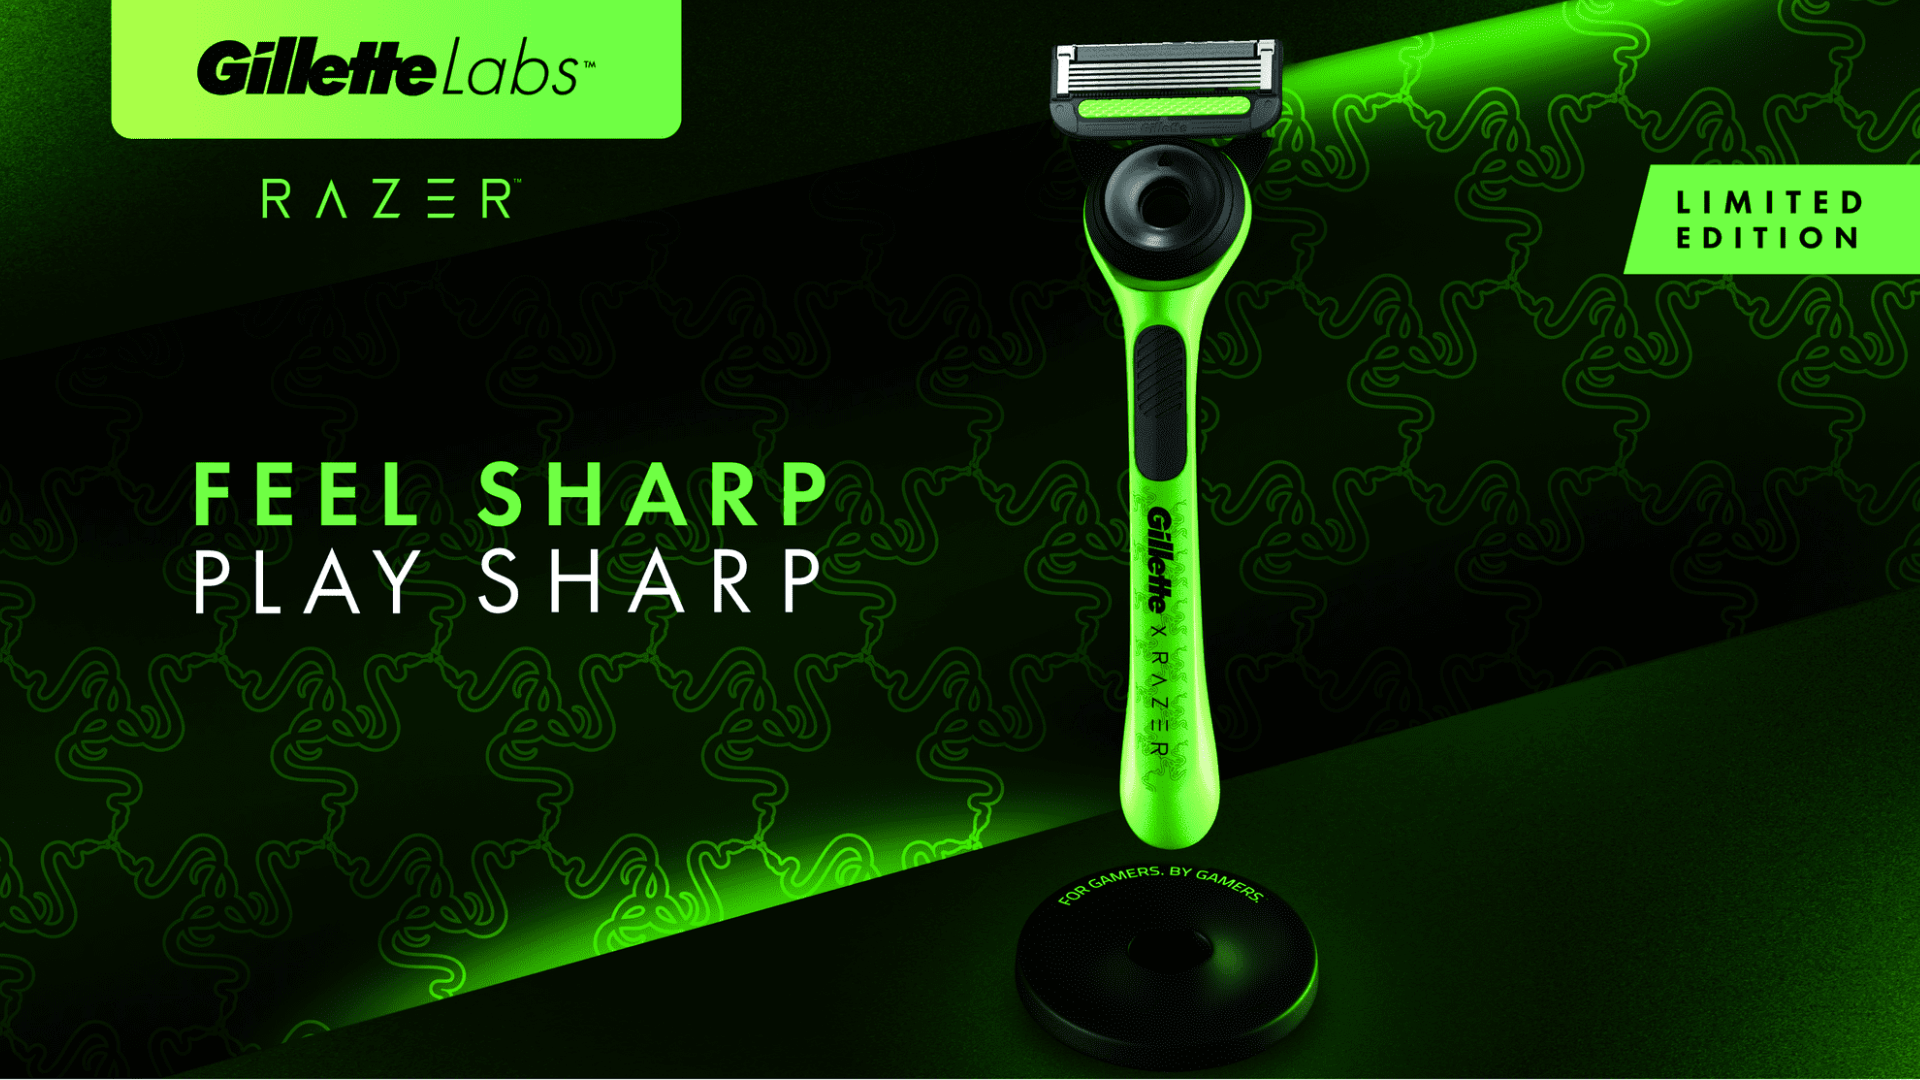 Em collab, Gillette e Razer apresentam aparelho de barbear com design exclusivo